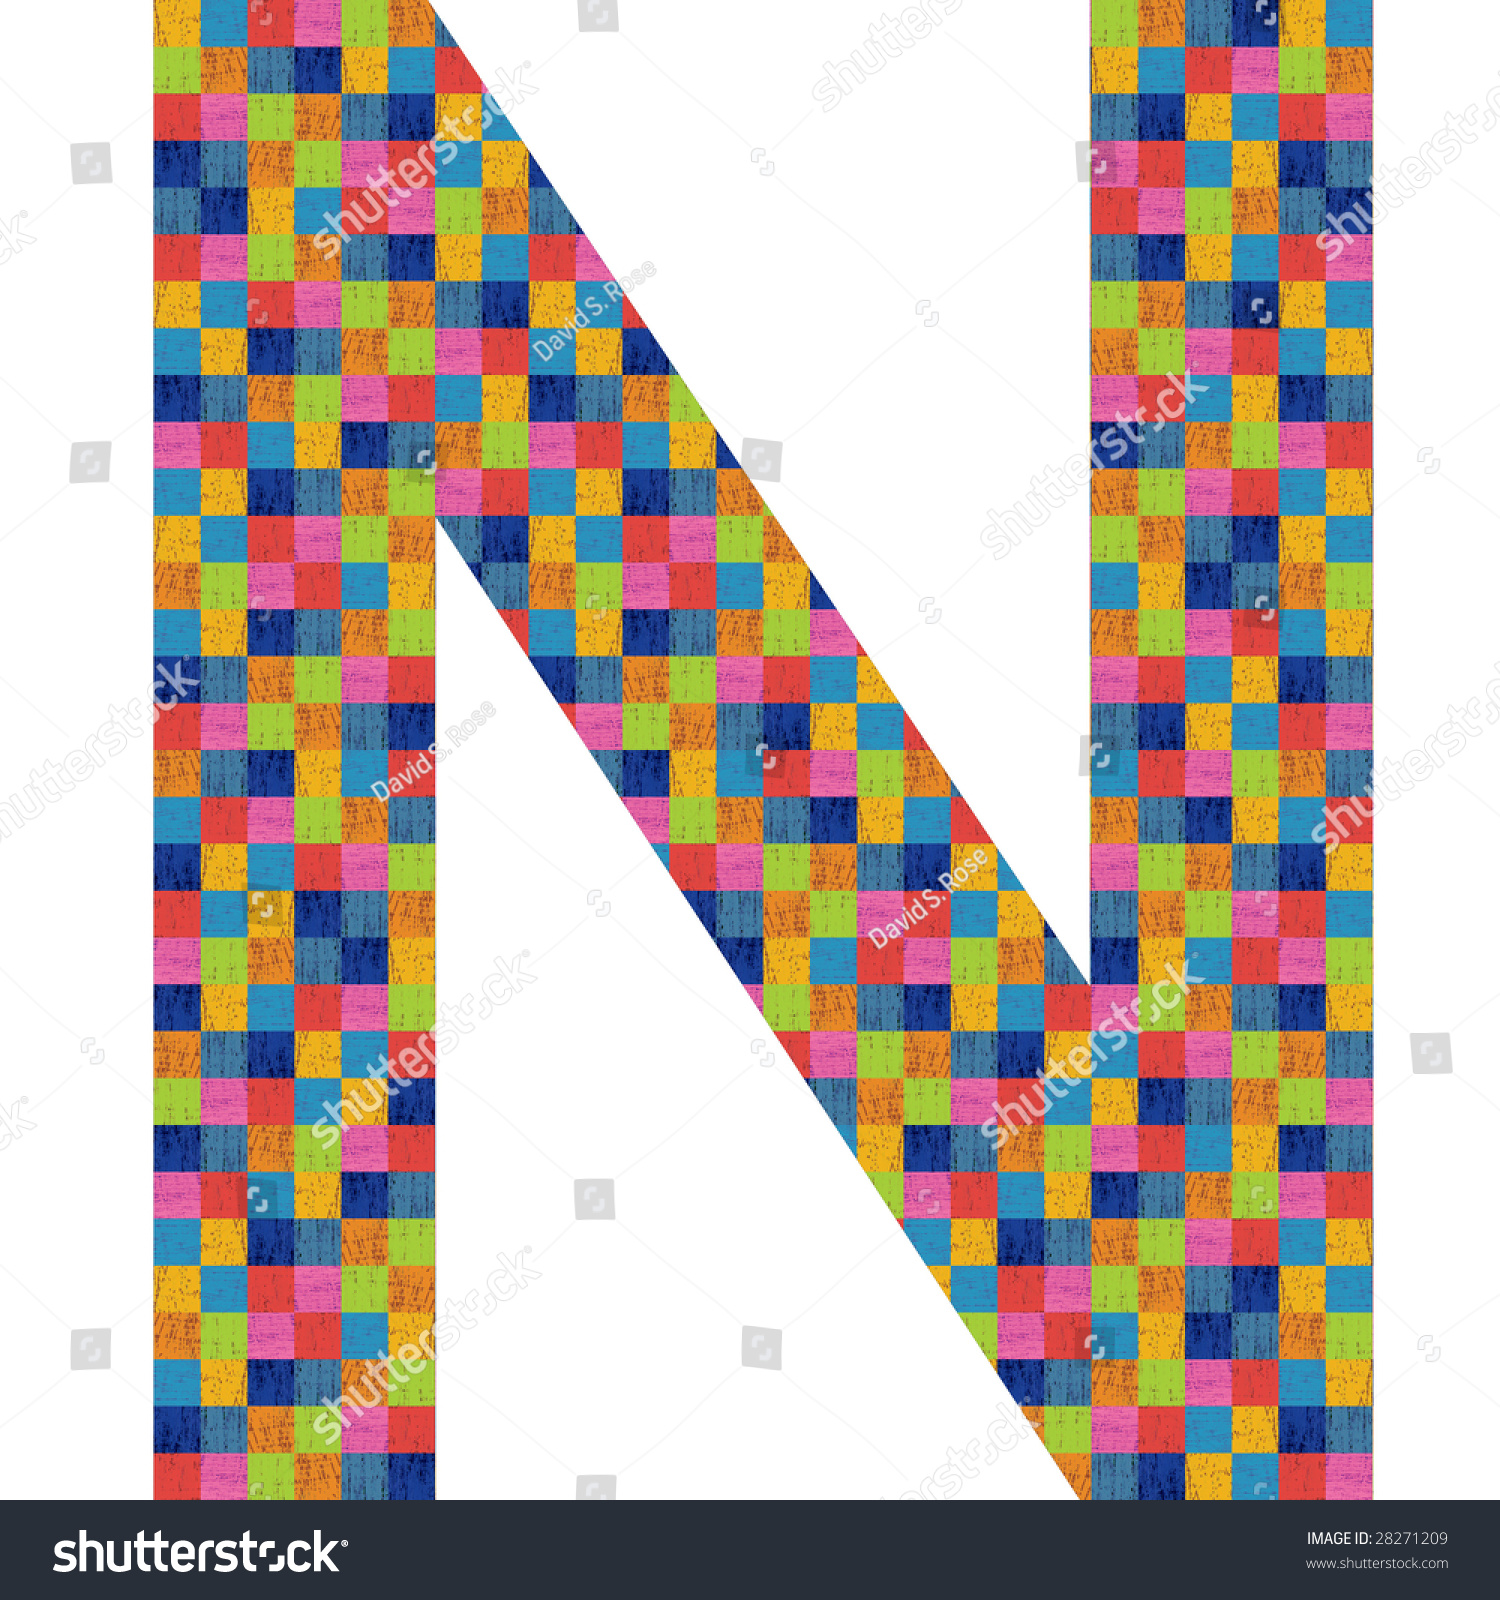 Letter N Alphabet Symbol Design Stock Illustration 28271209 - Shutterstock